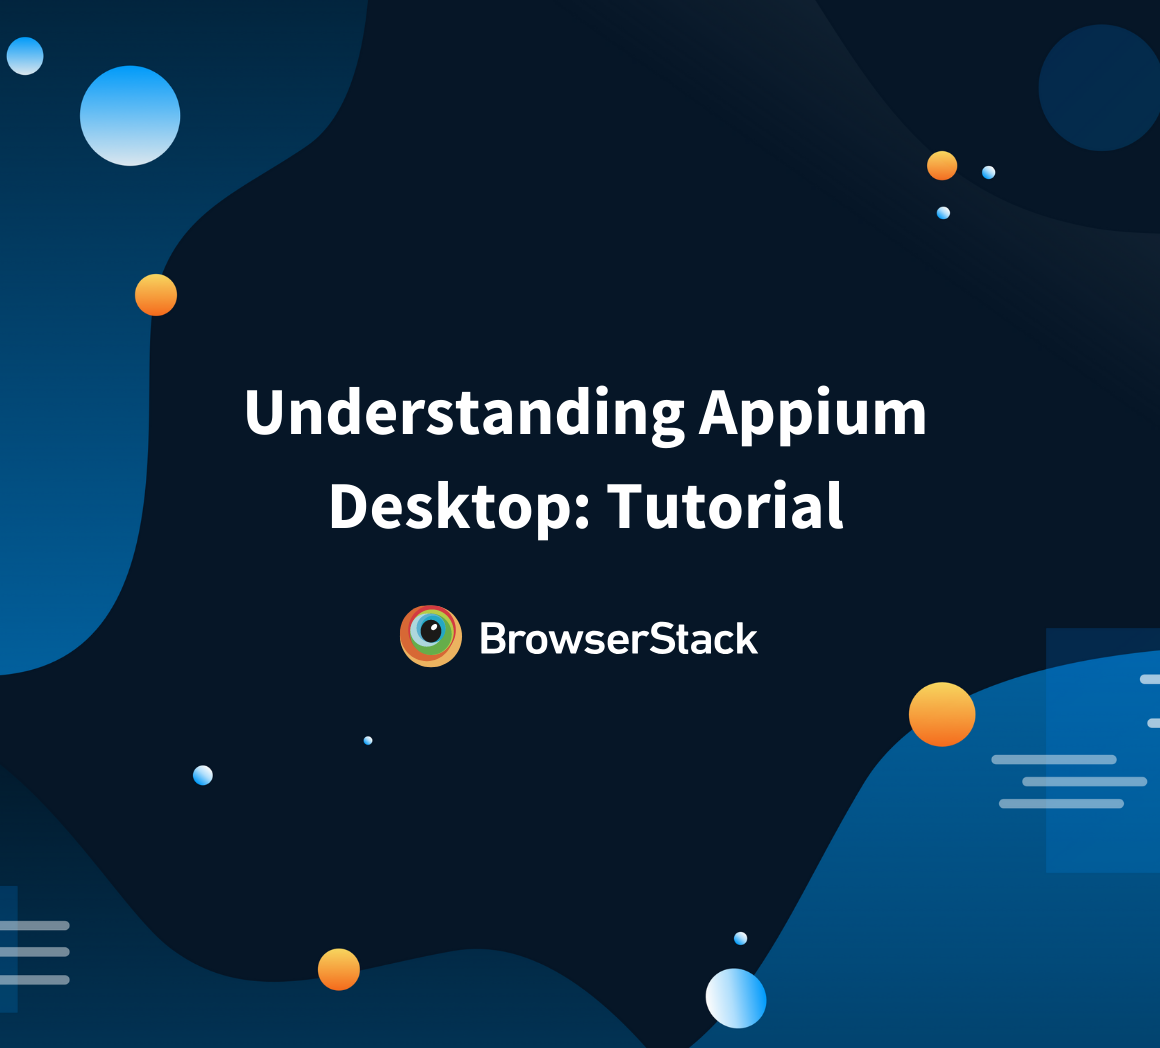 Appium Desktop